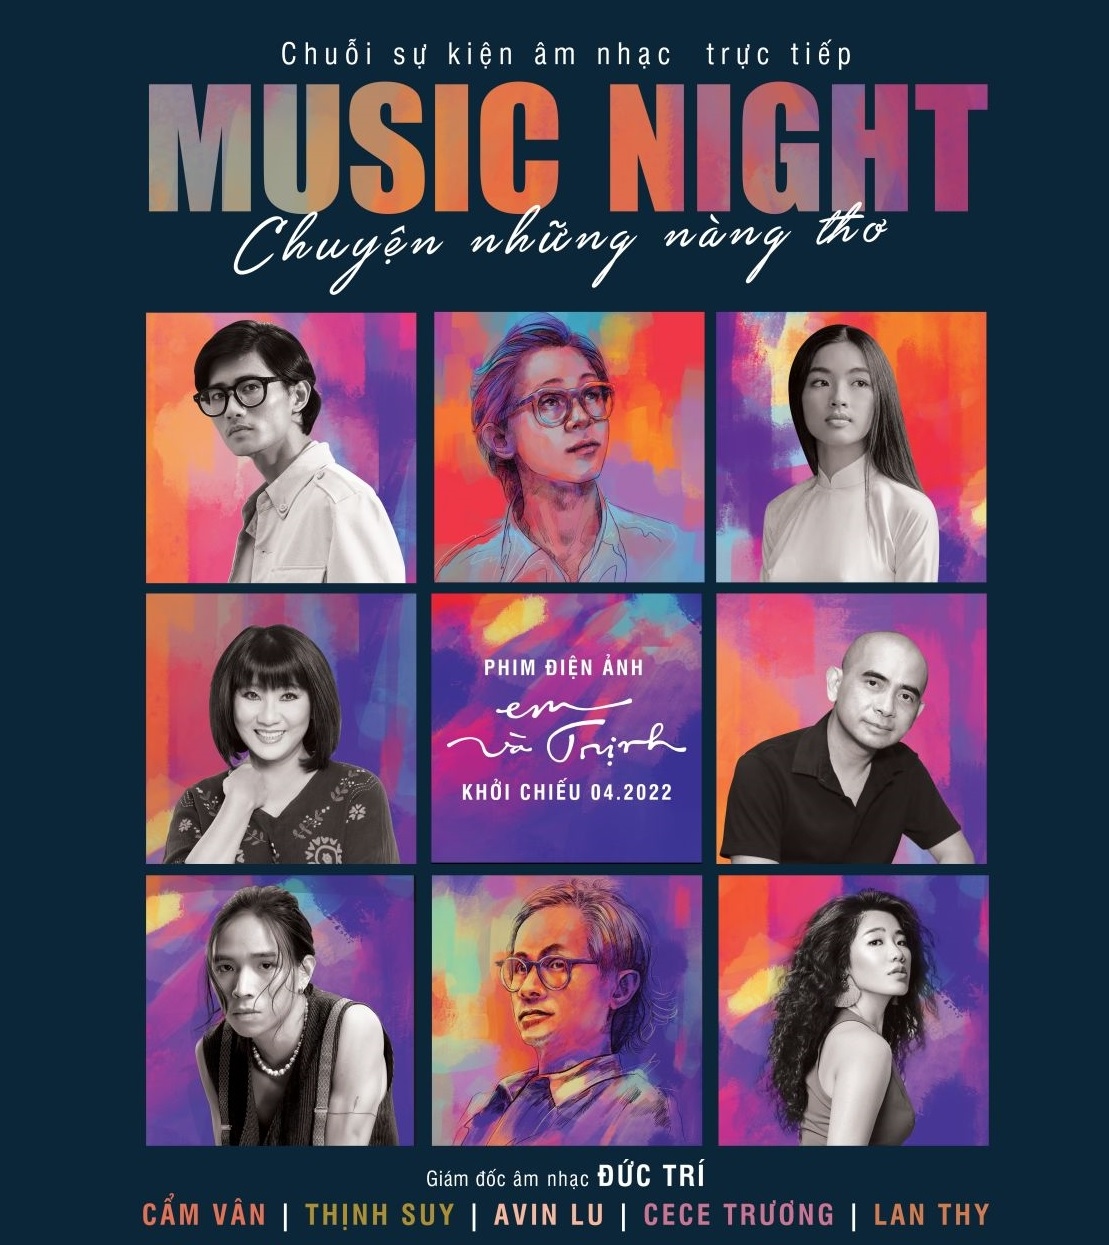 Đêm nhạc “Em và Trịnh – Chuyện những nàng thơ” kết nối điện ảnh, âm nhạc và cuộc đời